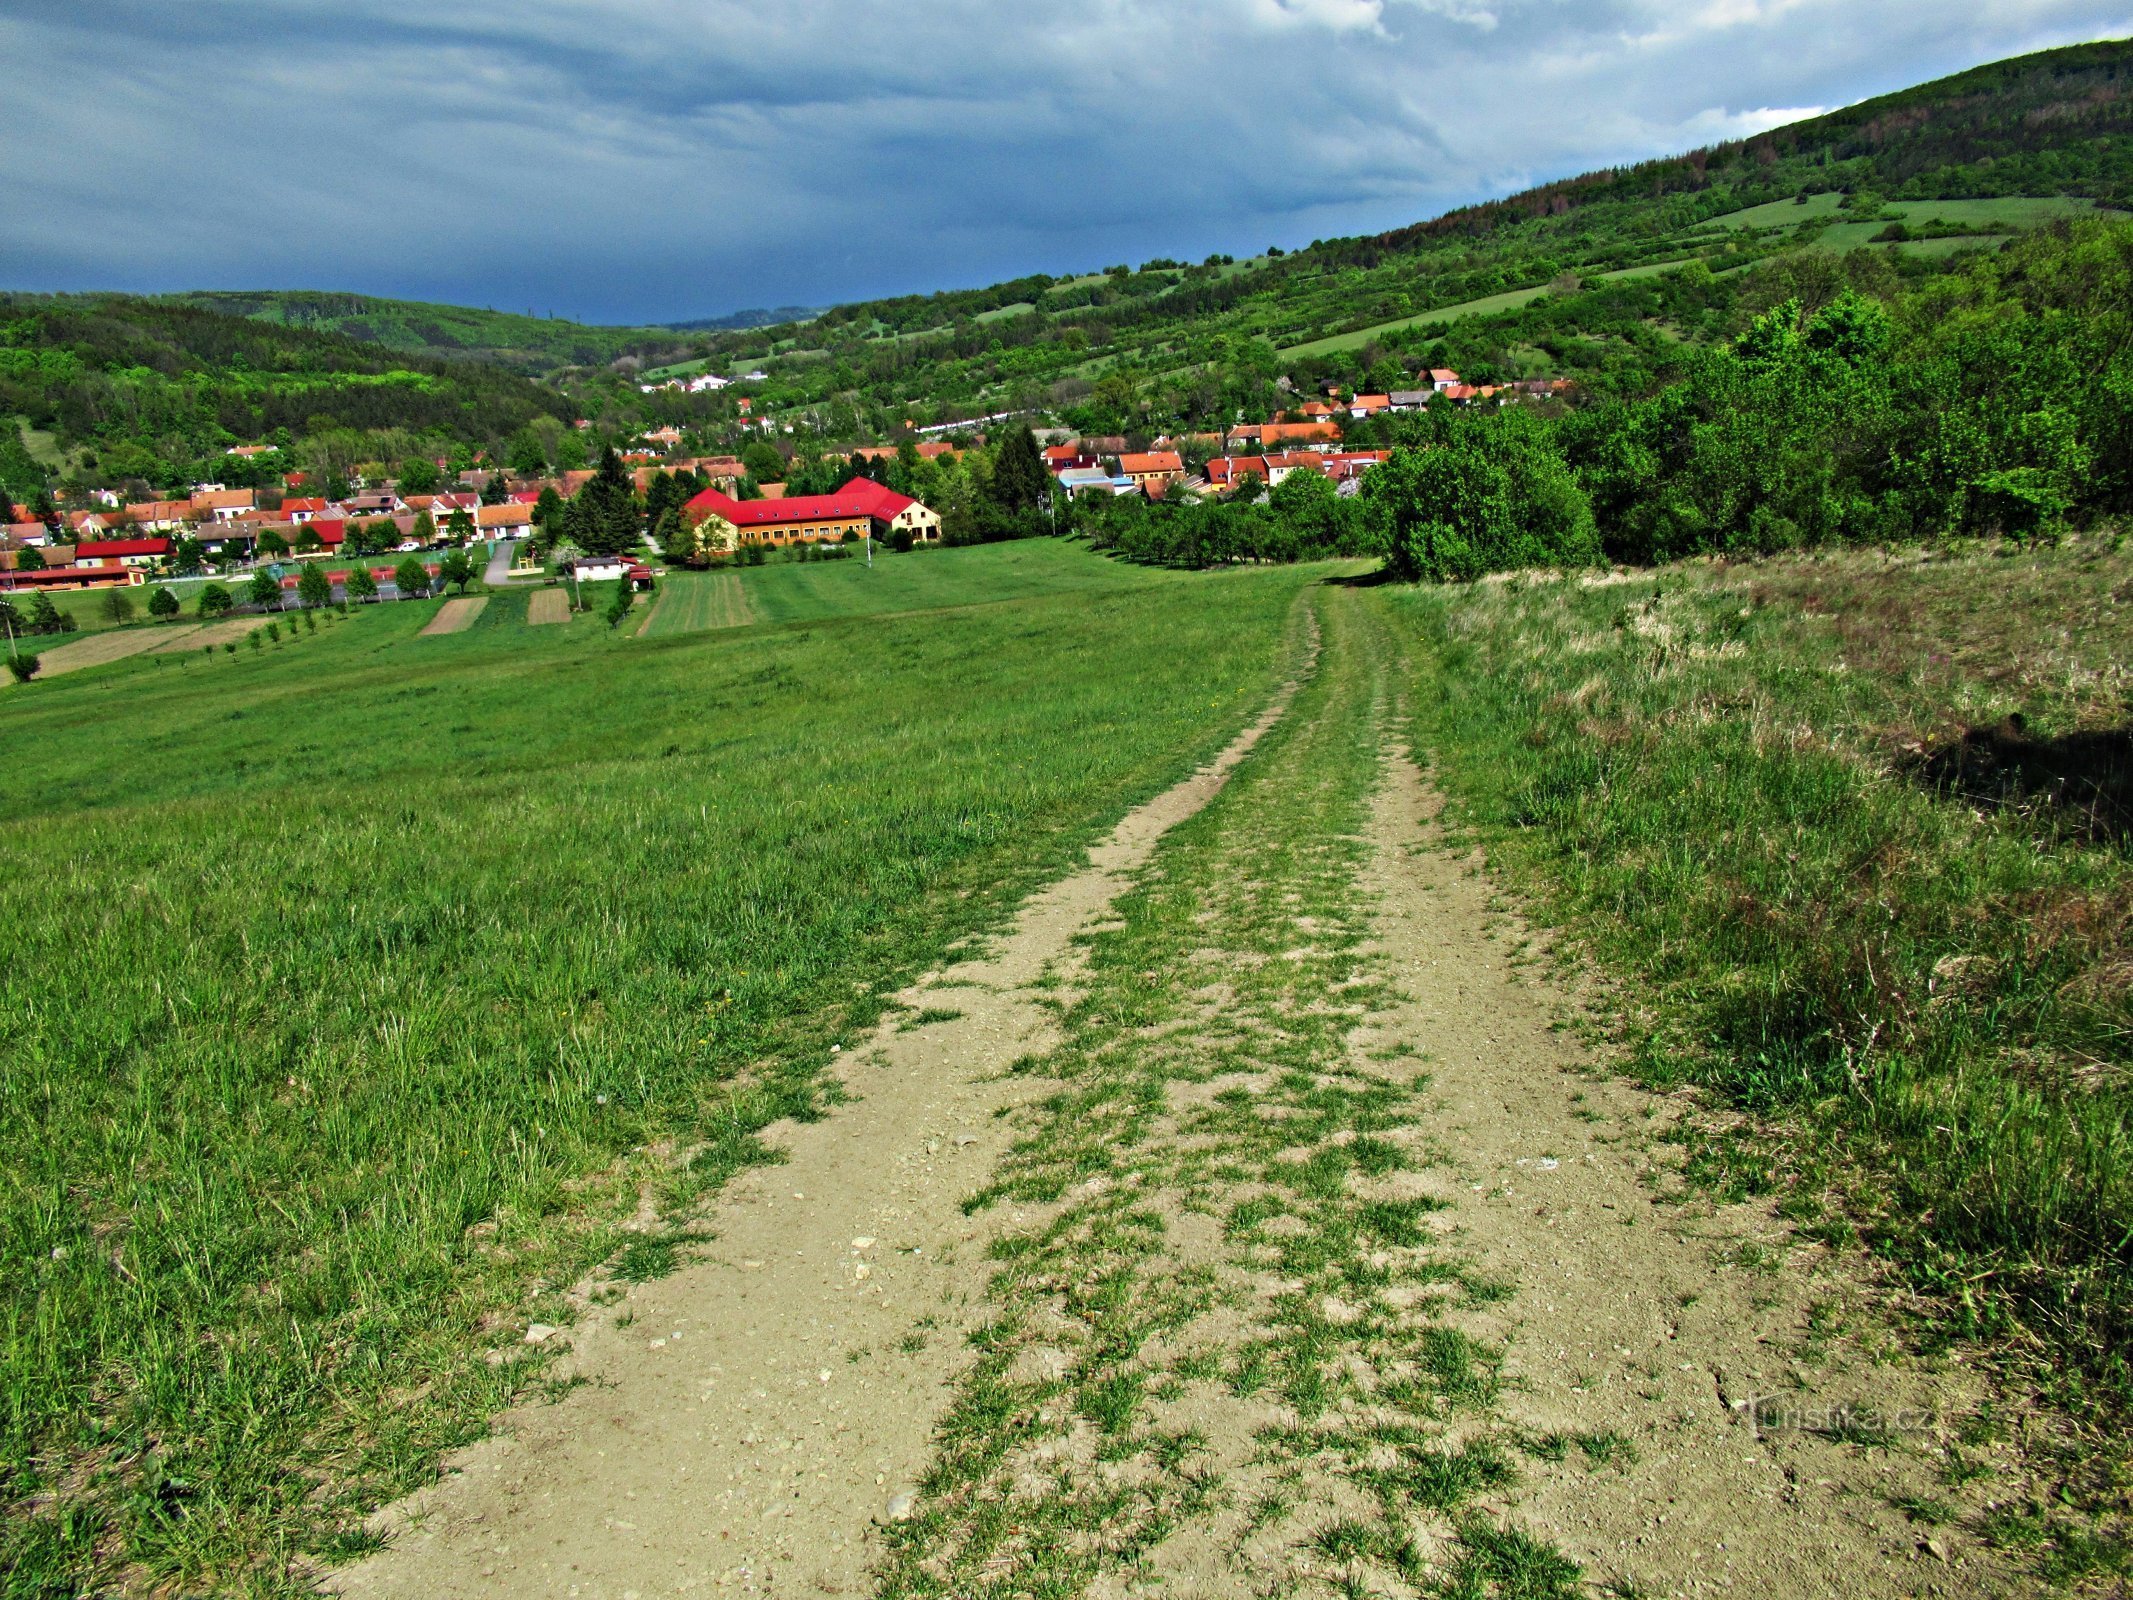 A village in Slovácko - Javorník